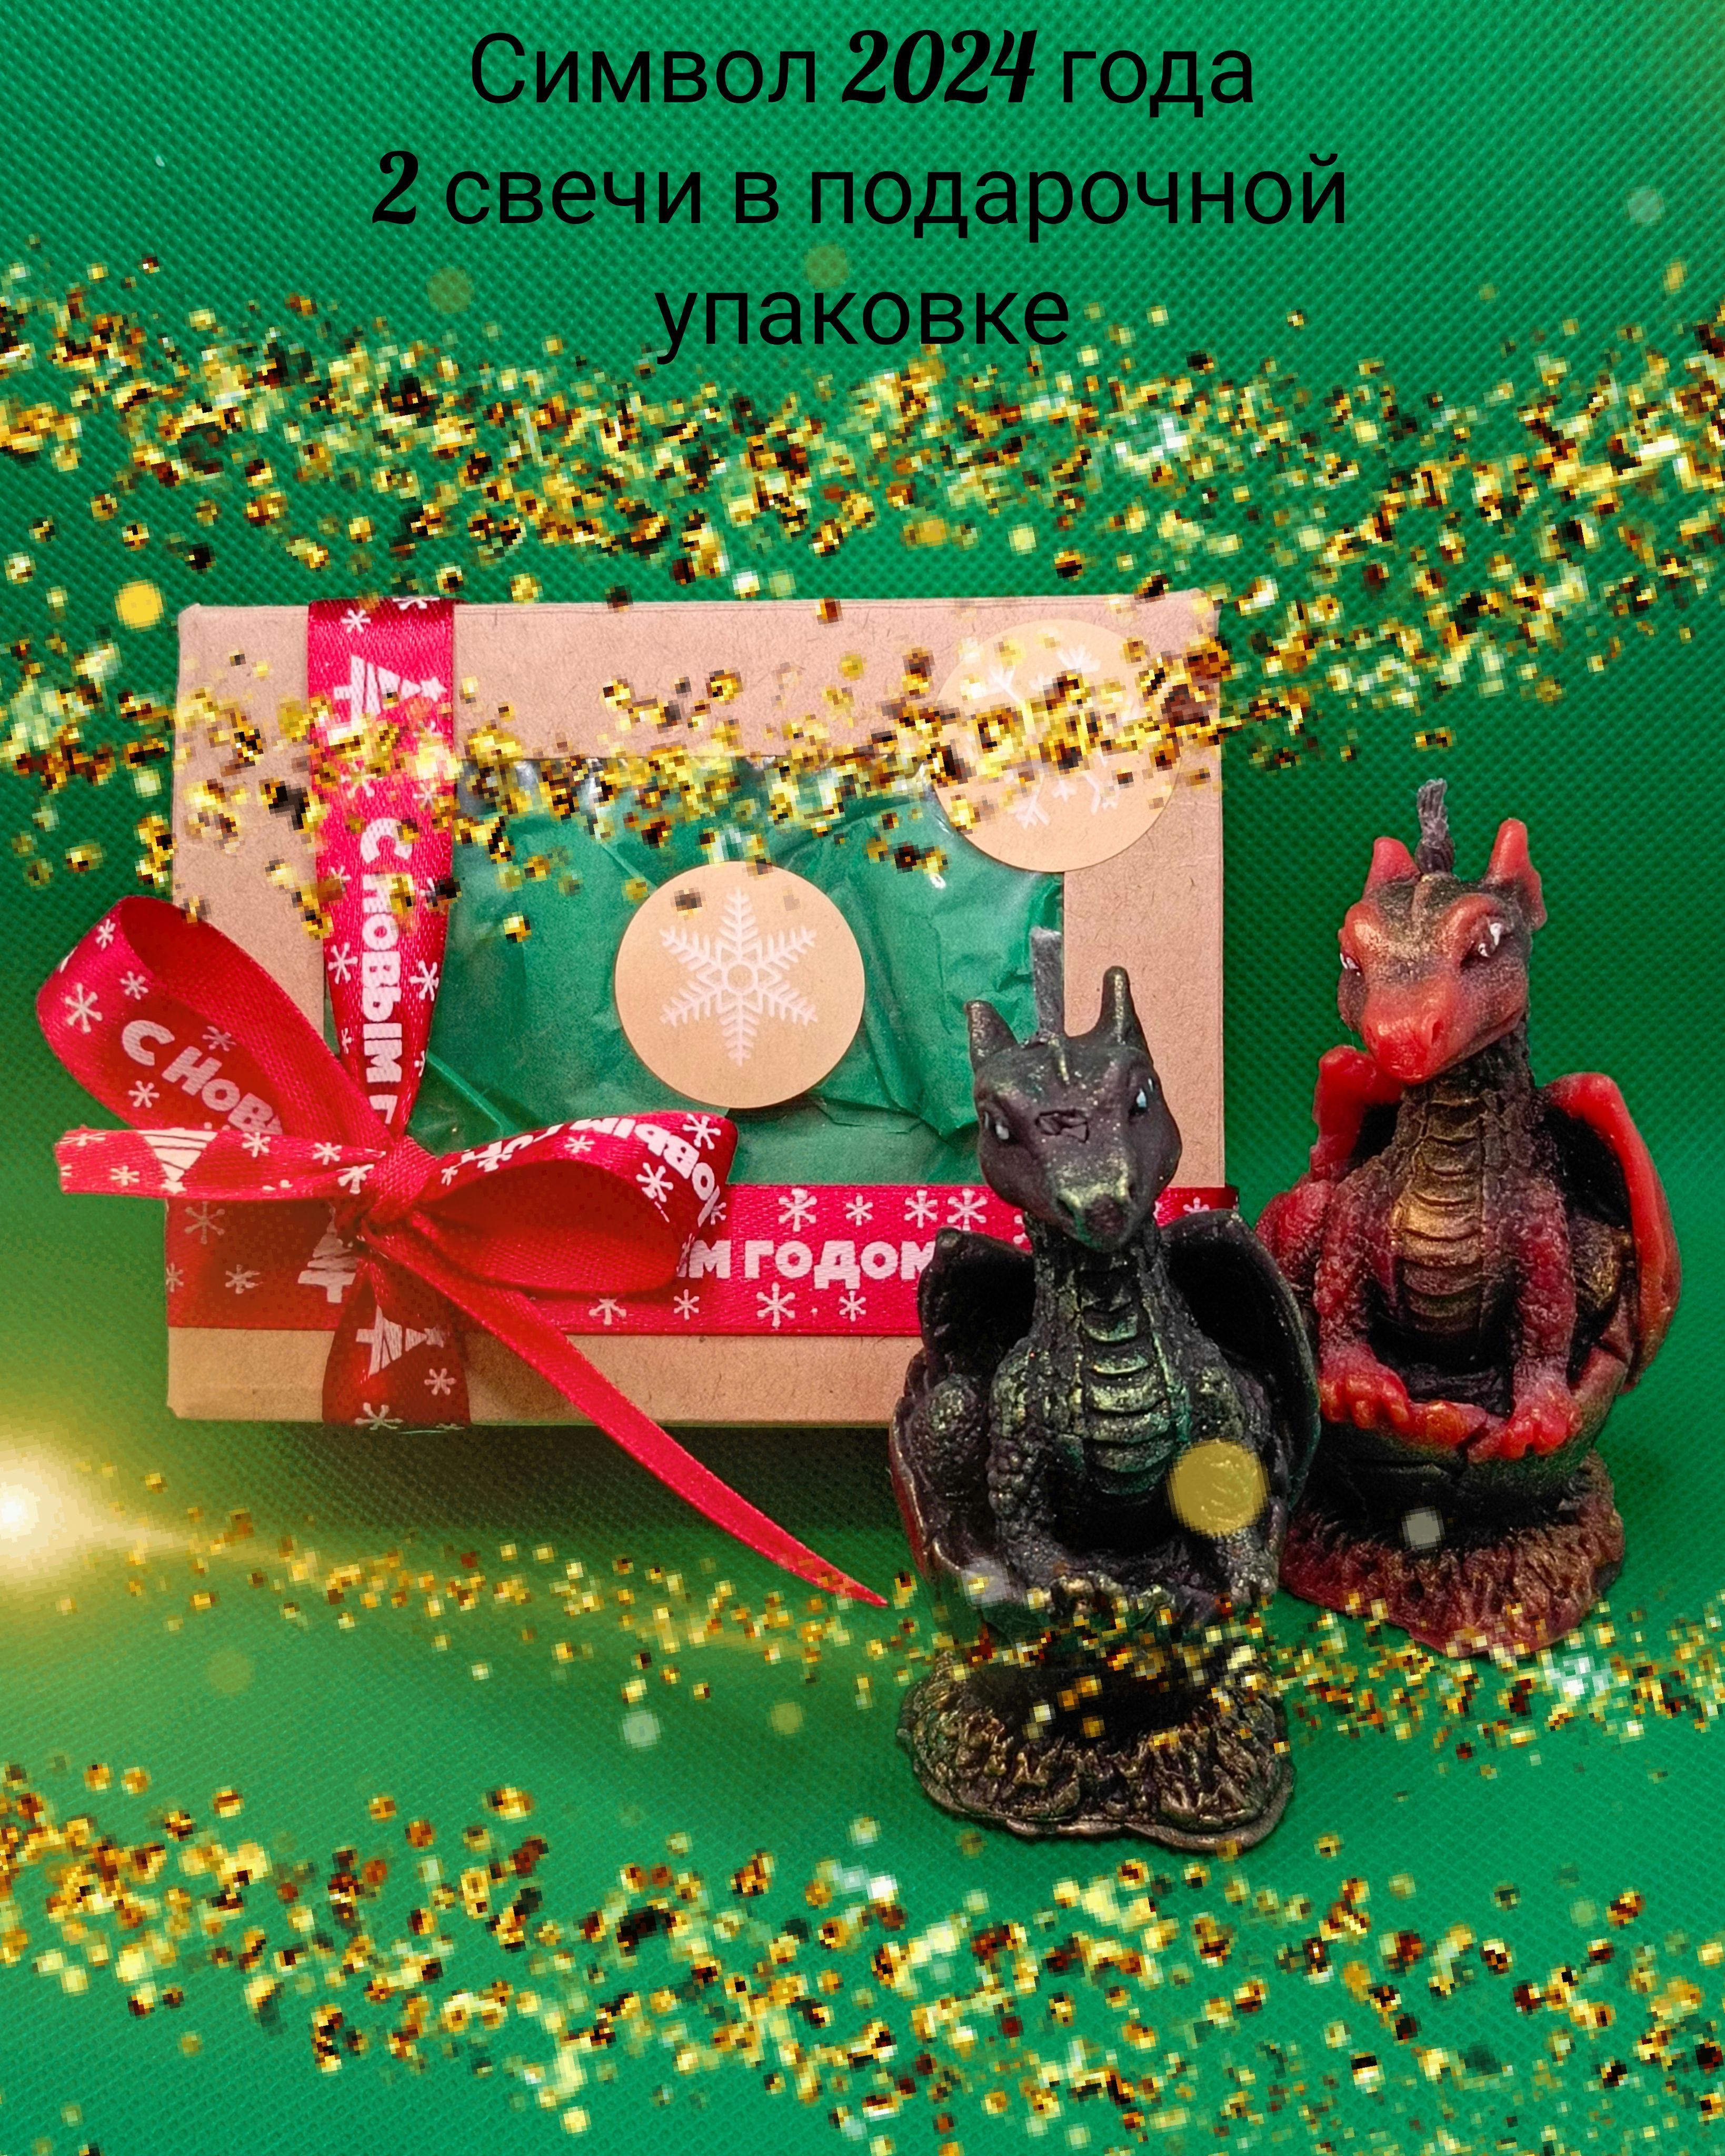 Свечи, подсвечники с Символом года Драконом оптом купить, заказать новогодние сувениры подарки